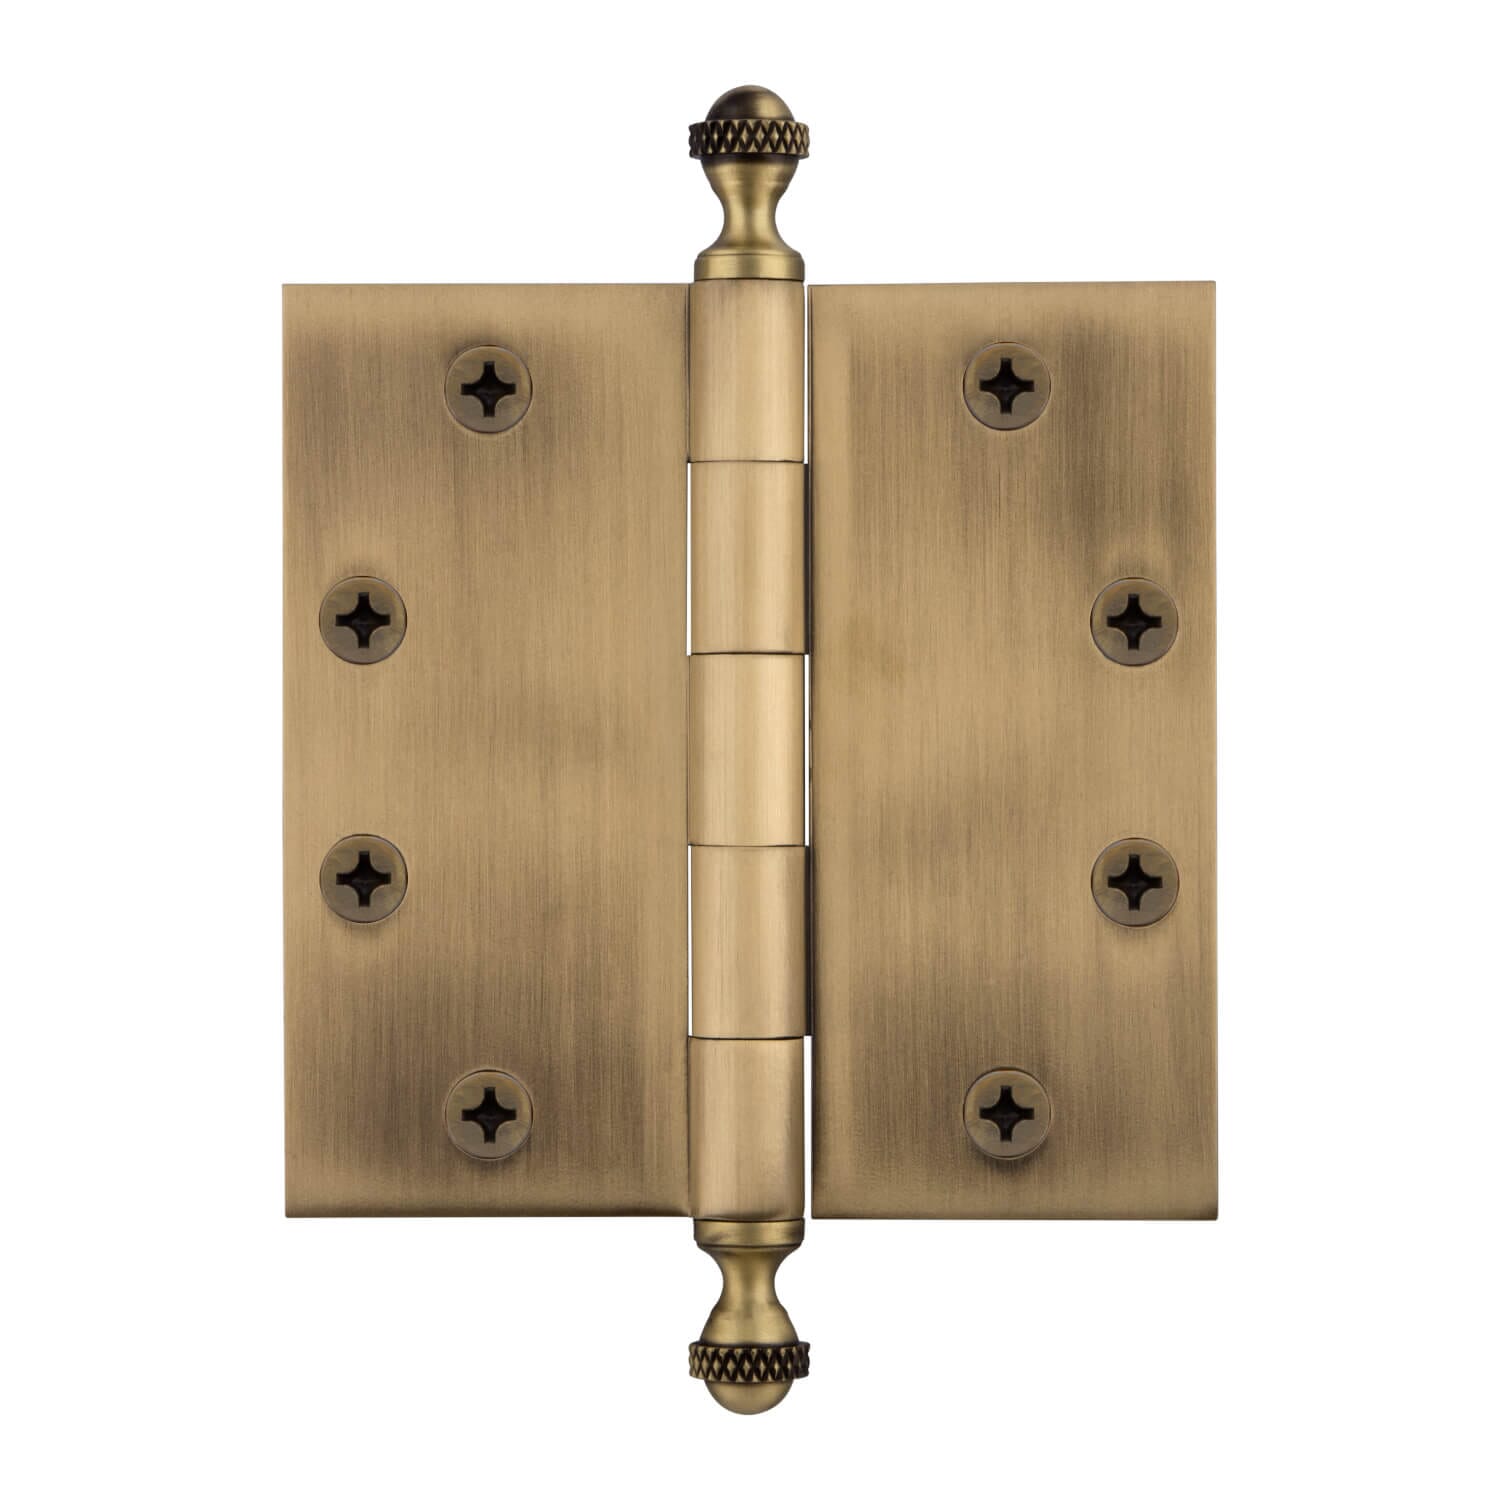 Door hinge, Left - 115 x 34 mm - Square / Acorn knob - Brass - Door hinges  - VillaHus